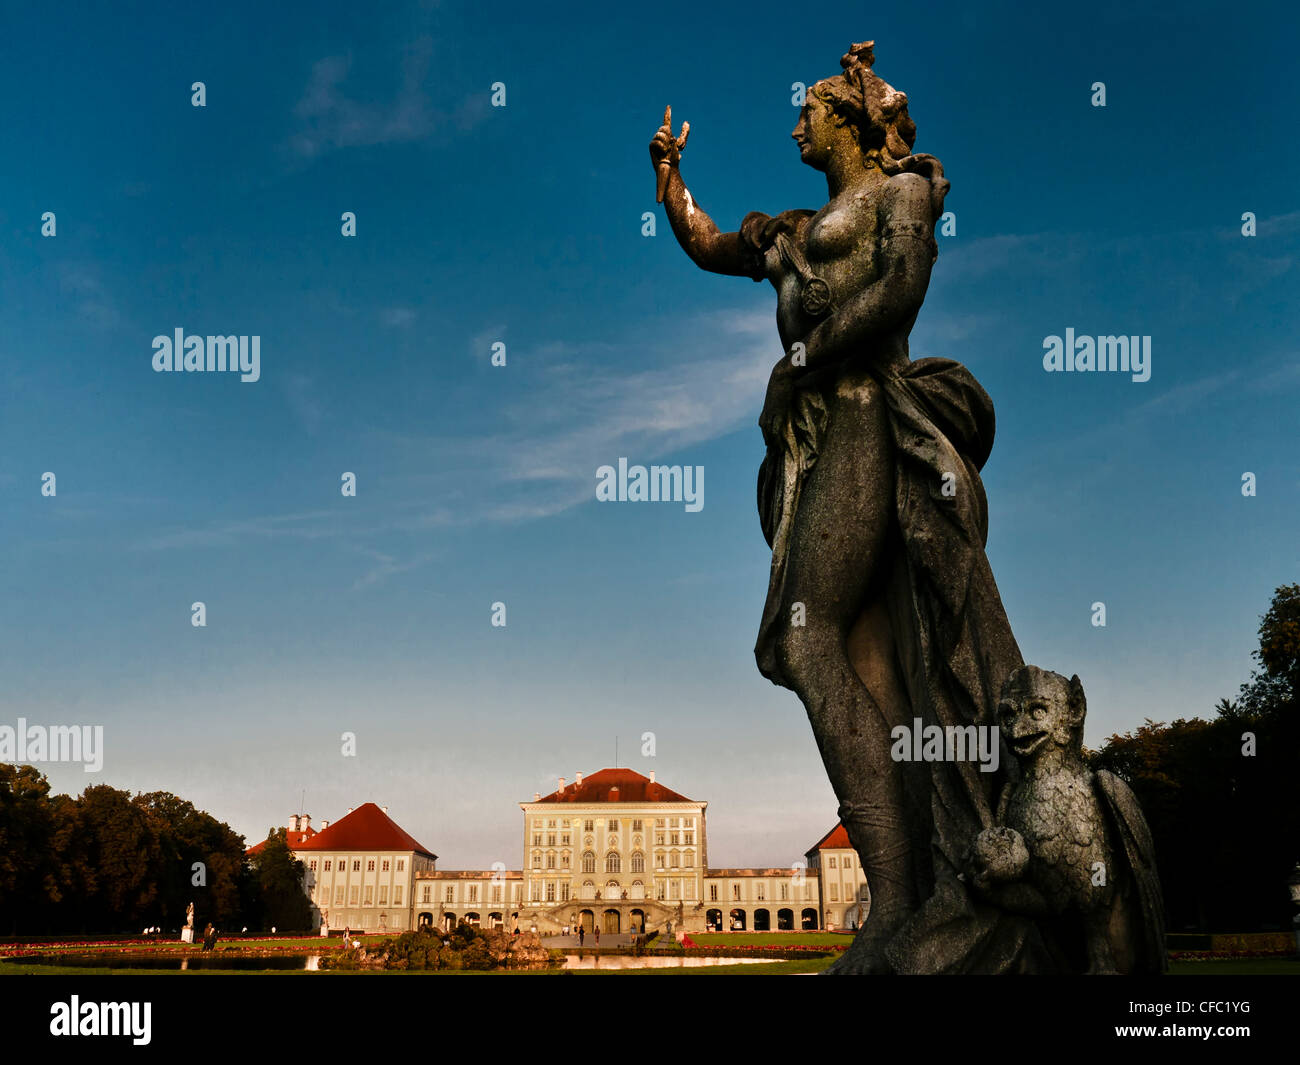 Bayern, Oberbayern, Deutschland, Statue, München, München, Nymphenburg, Schloss, Schlosspark, Schlosspark, Figur, Statue, Witz Stockfoto